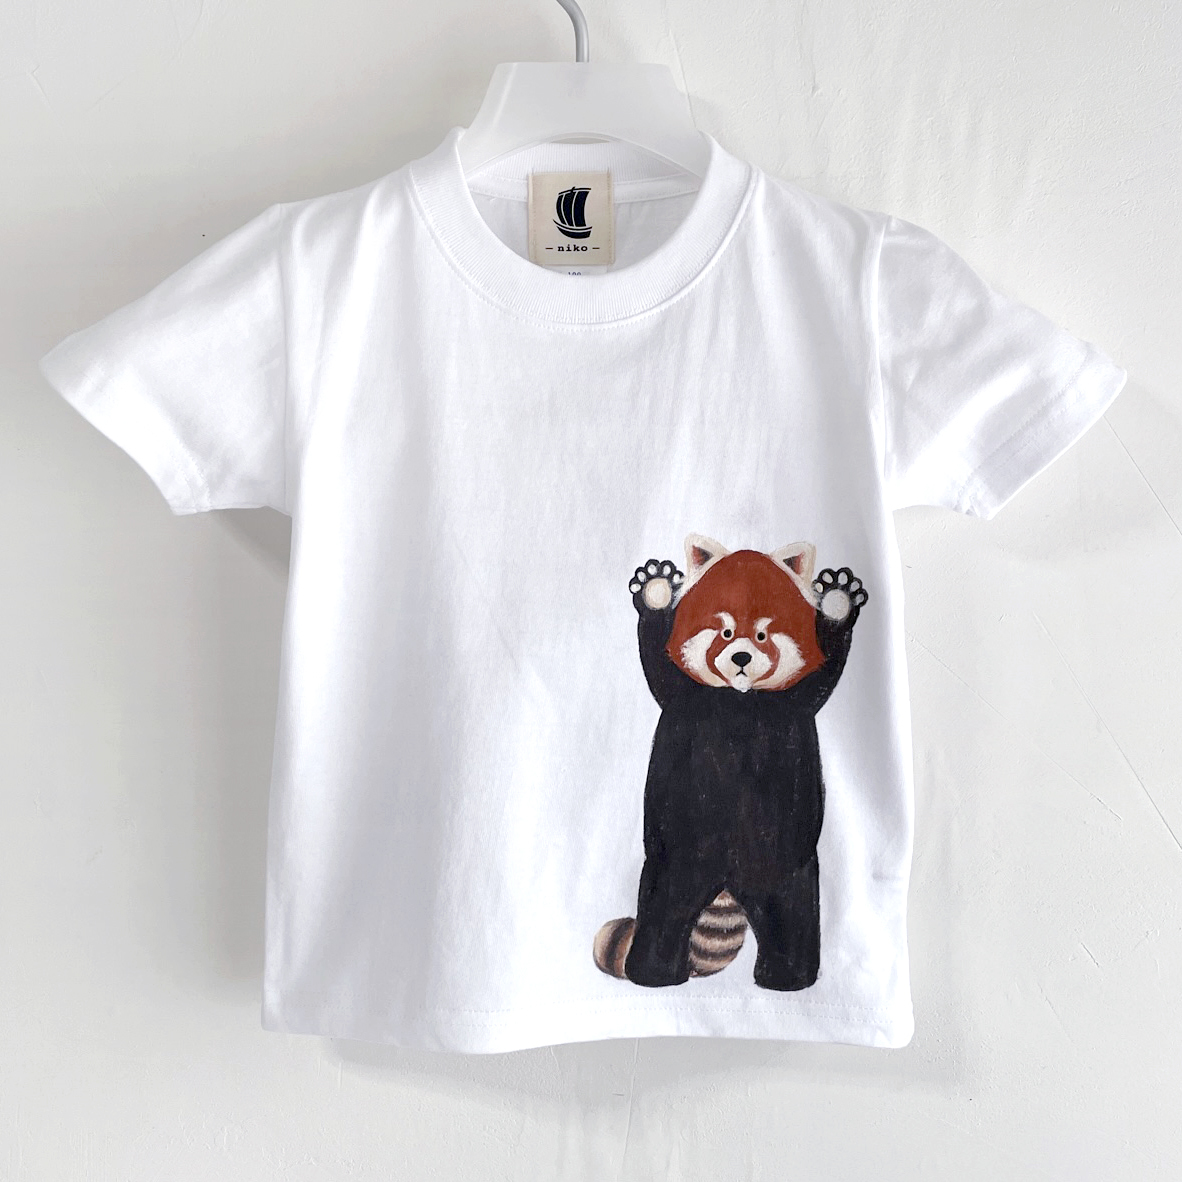 Kinder T-Shirt, Größe 130, Weiß, T-Shirt mit rotem Panda-Muster, Weiß, handgefertigt, handgezeichnetes T-Shirt, Tier, Spitzen, Kurzärmeliges T-shirt, 130 (125~134 cm)